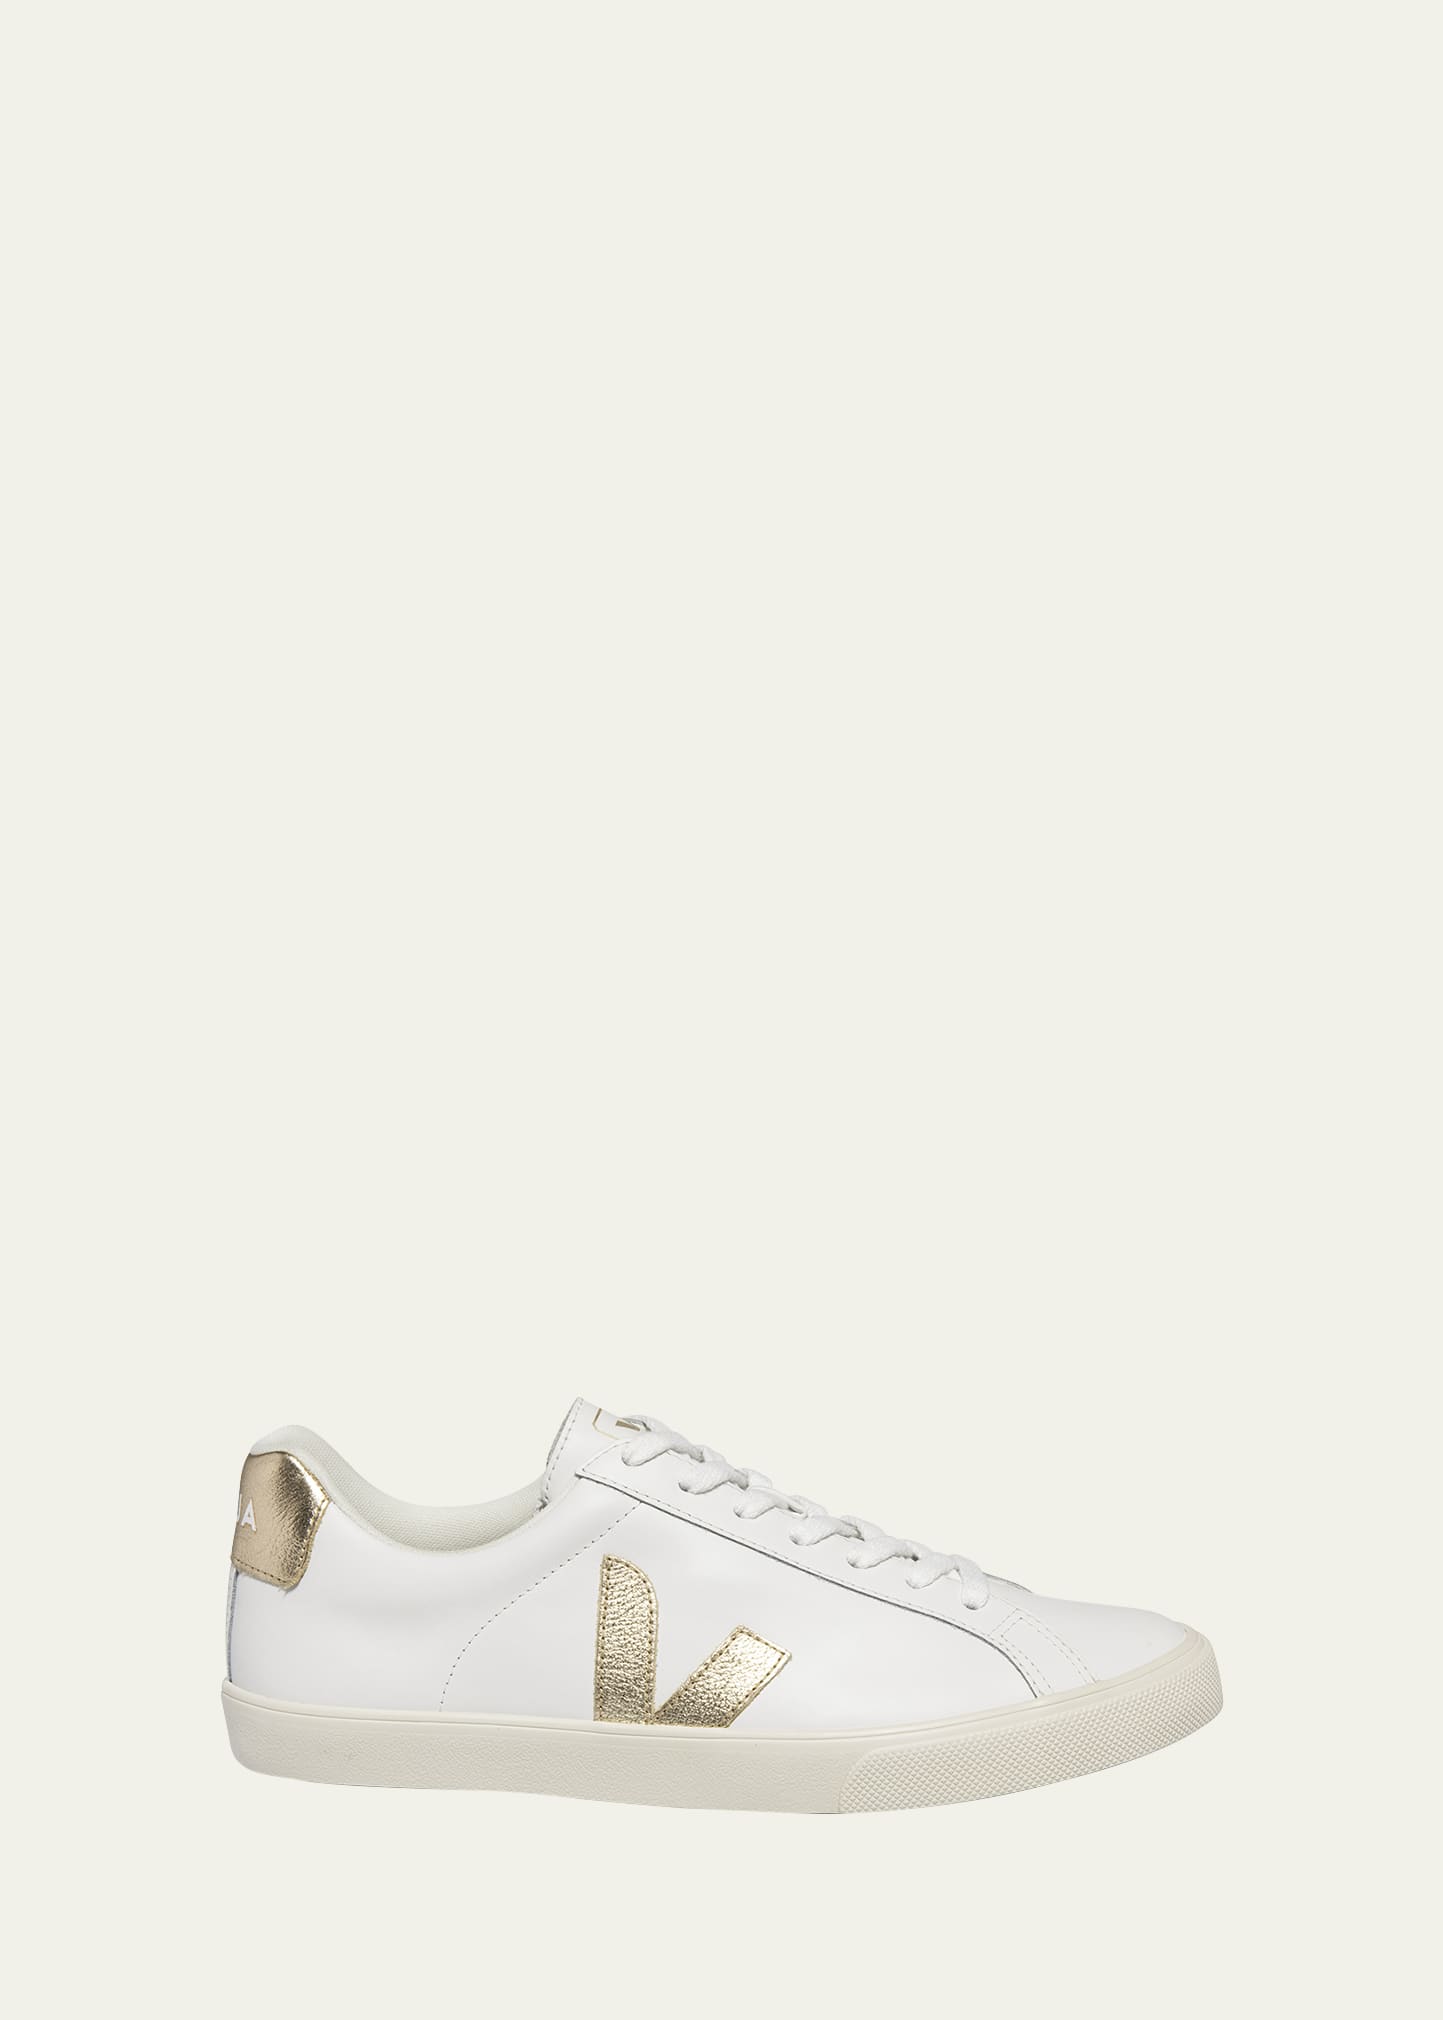 VEJA Esplar Bicolor Leather Low-Top Sneakers | Bergdorf Goodman